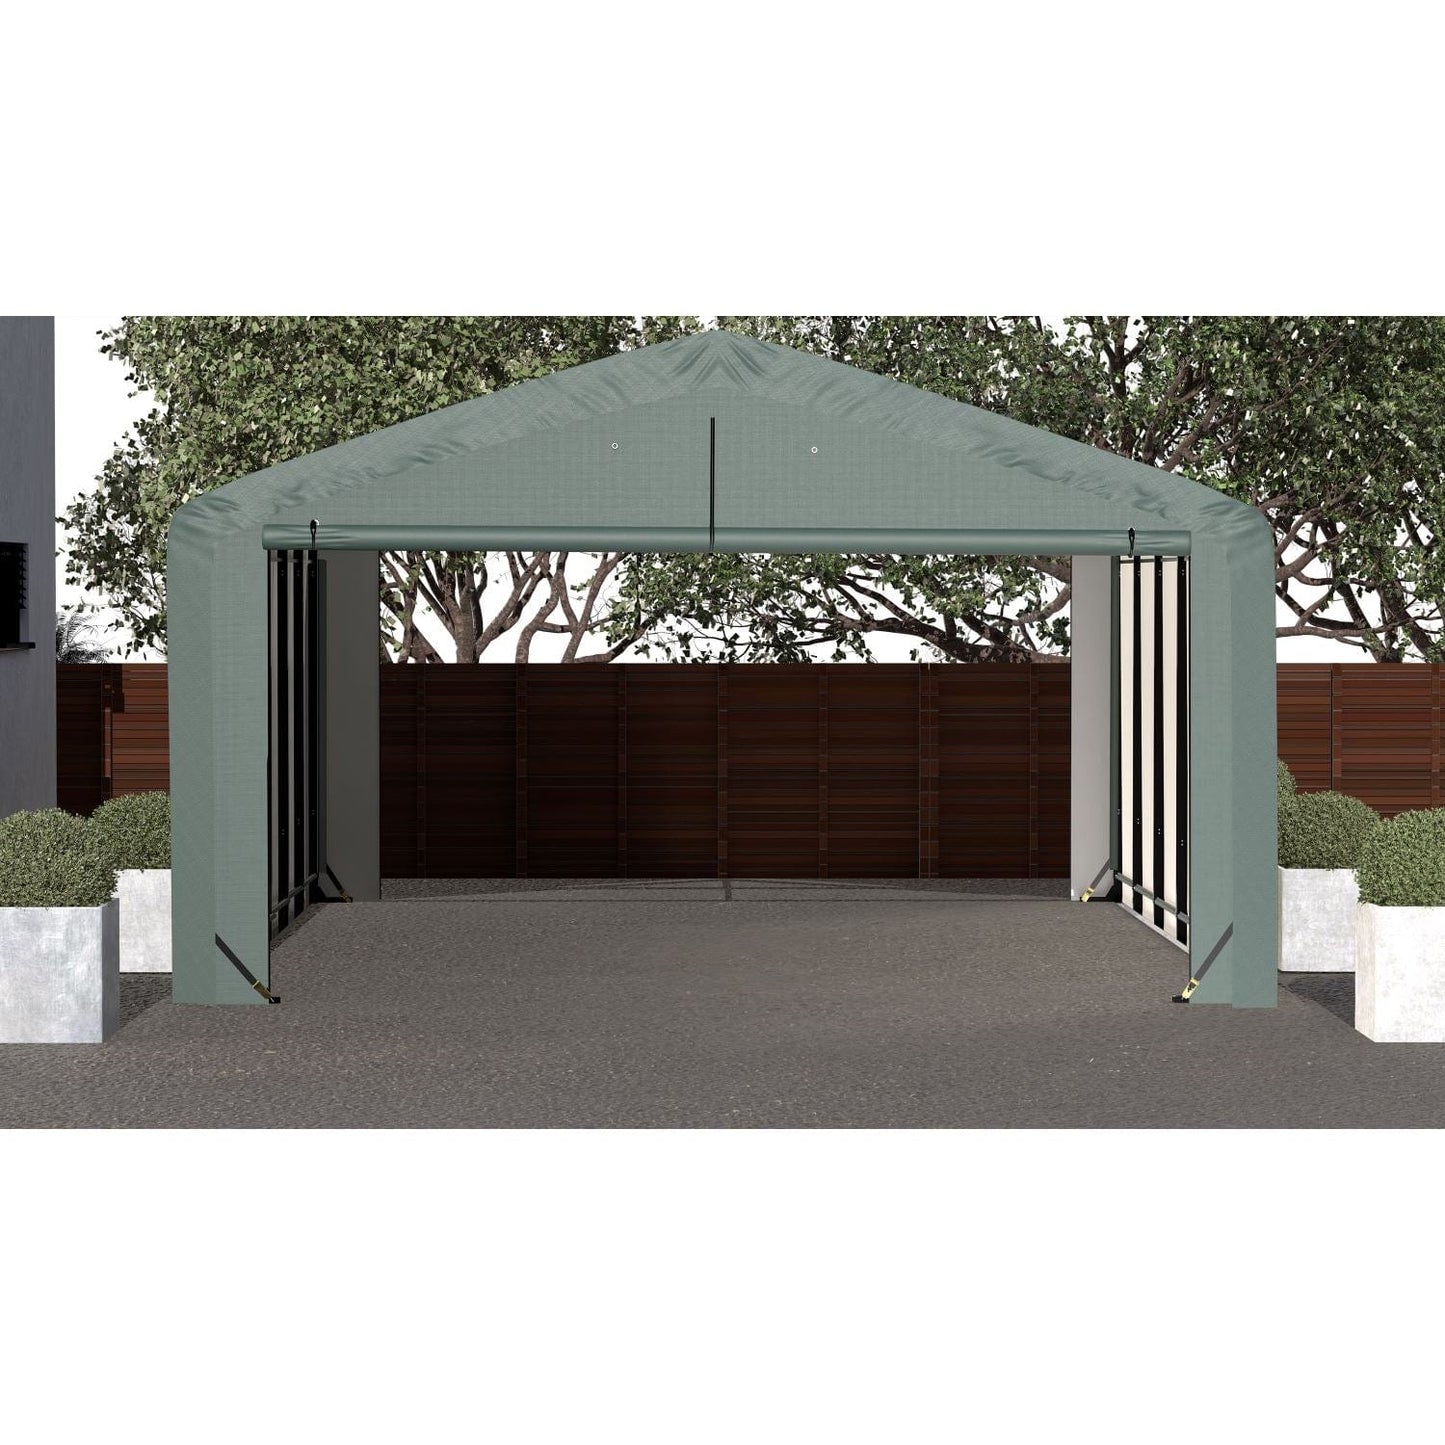 ShelterLogic Portable Garage ShelterLogic | ShelterTube Wind and Snow-Load Rated Garage 20x27x10 Green SQAADD0104C02002710